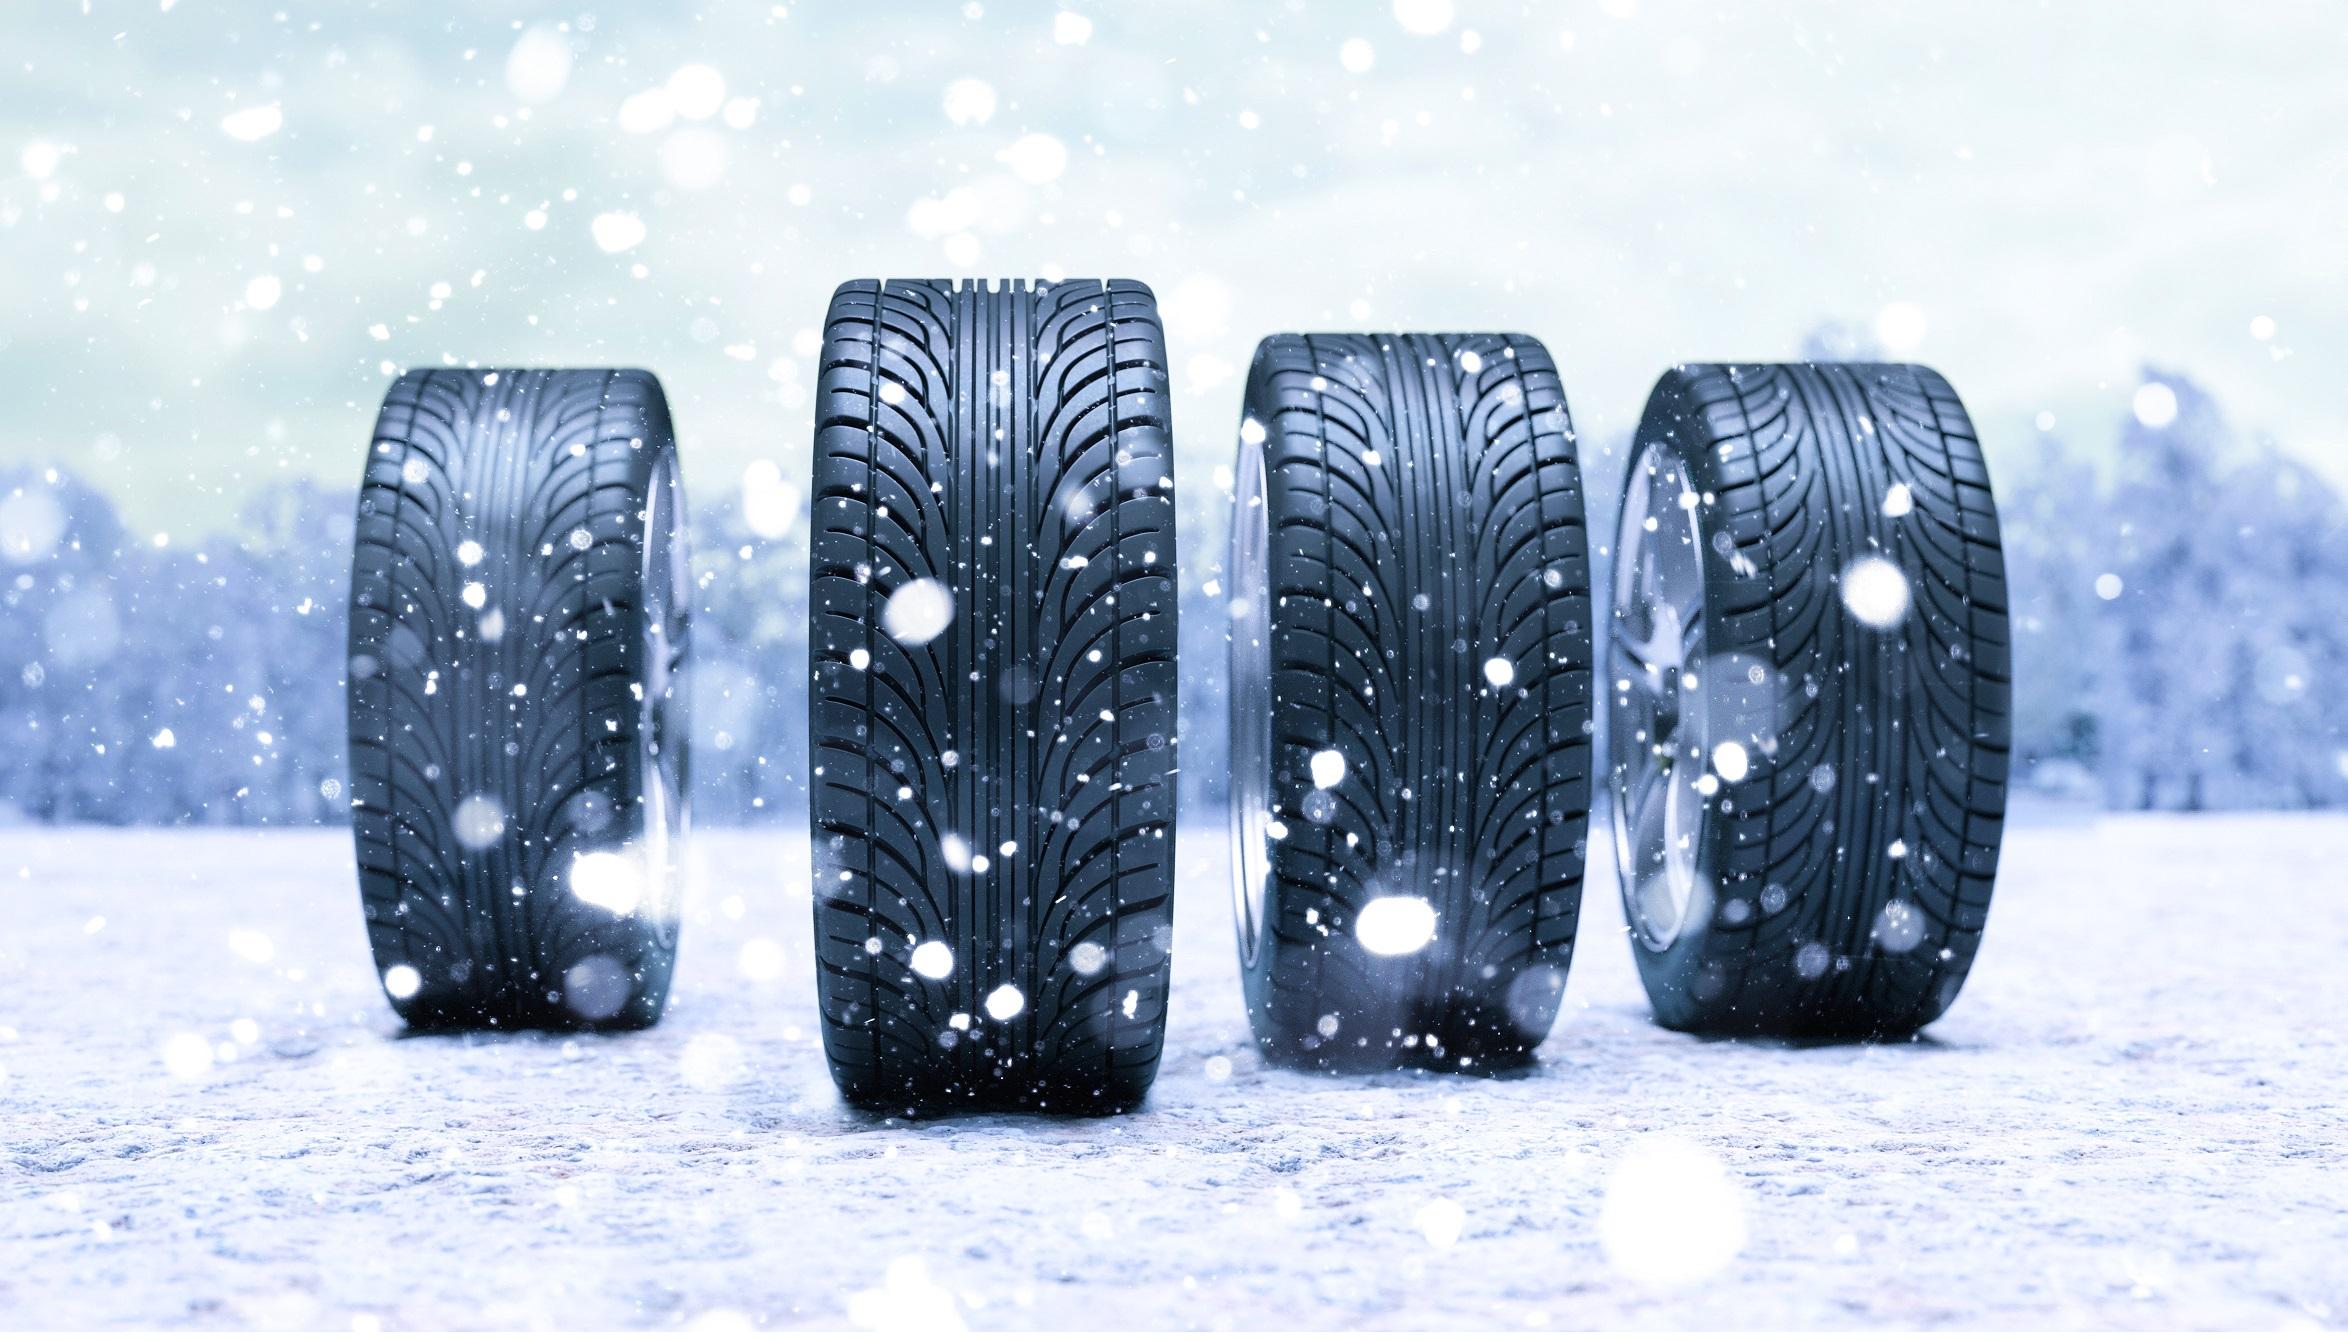 Avec Elan Automobile, adoptez les bons gestes pour l’hiver 